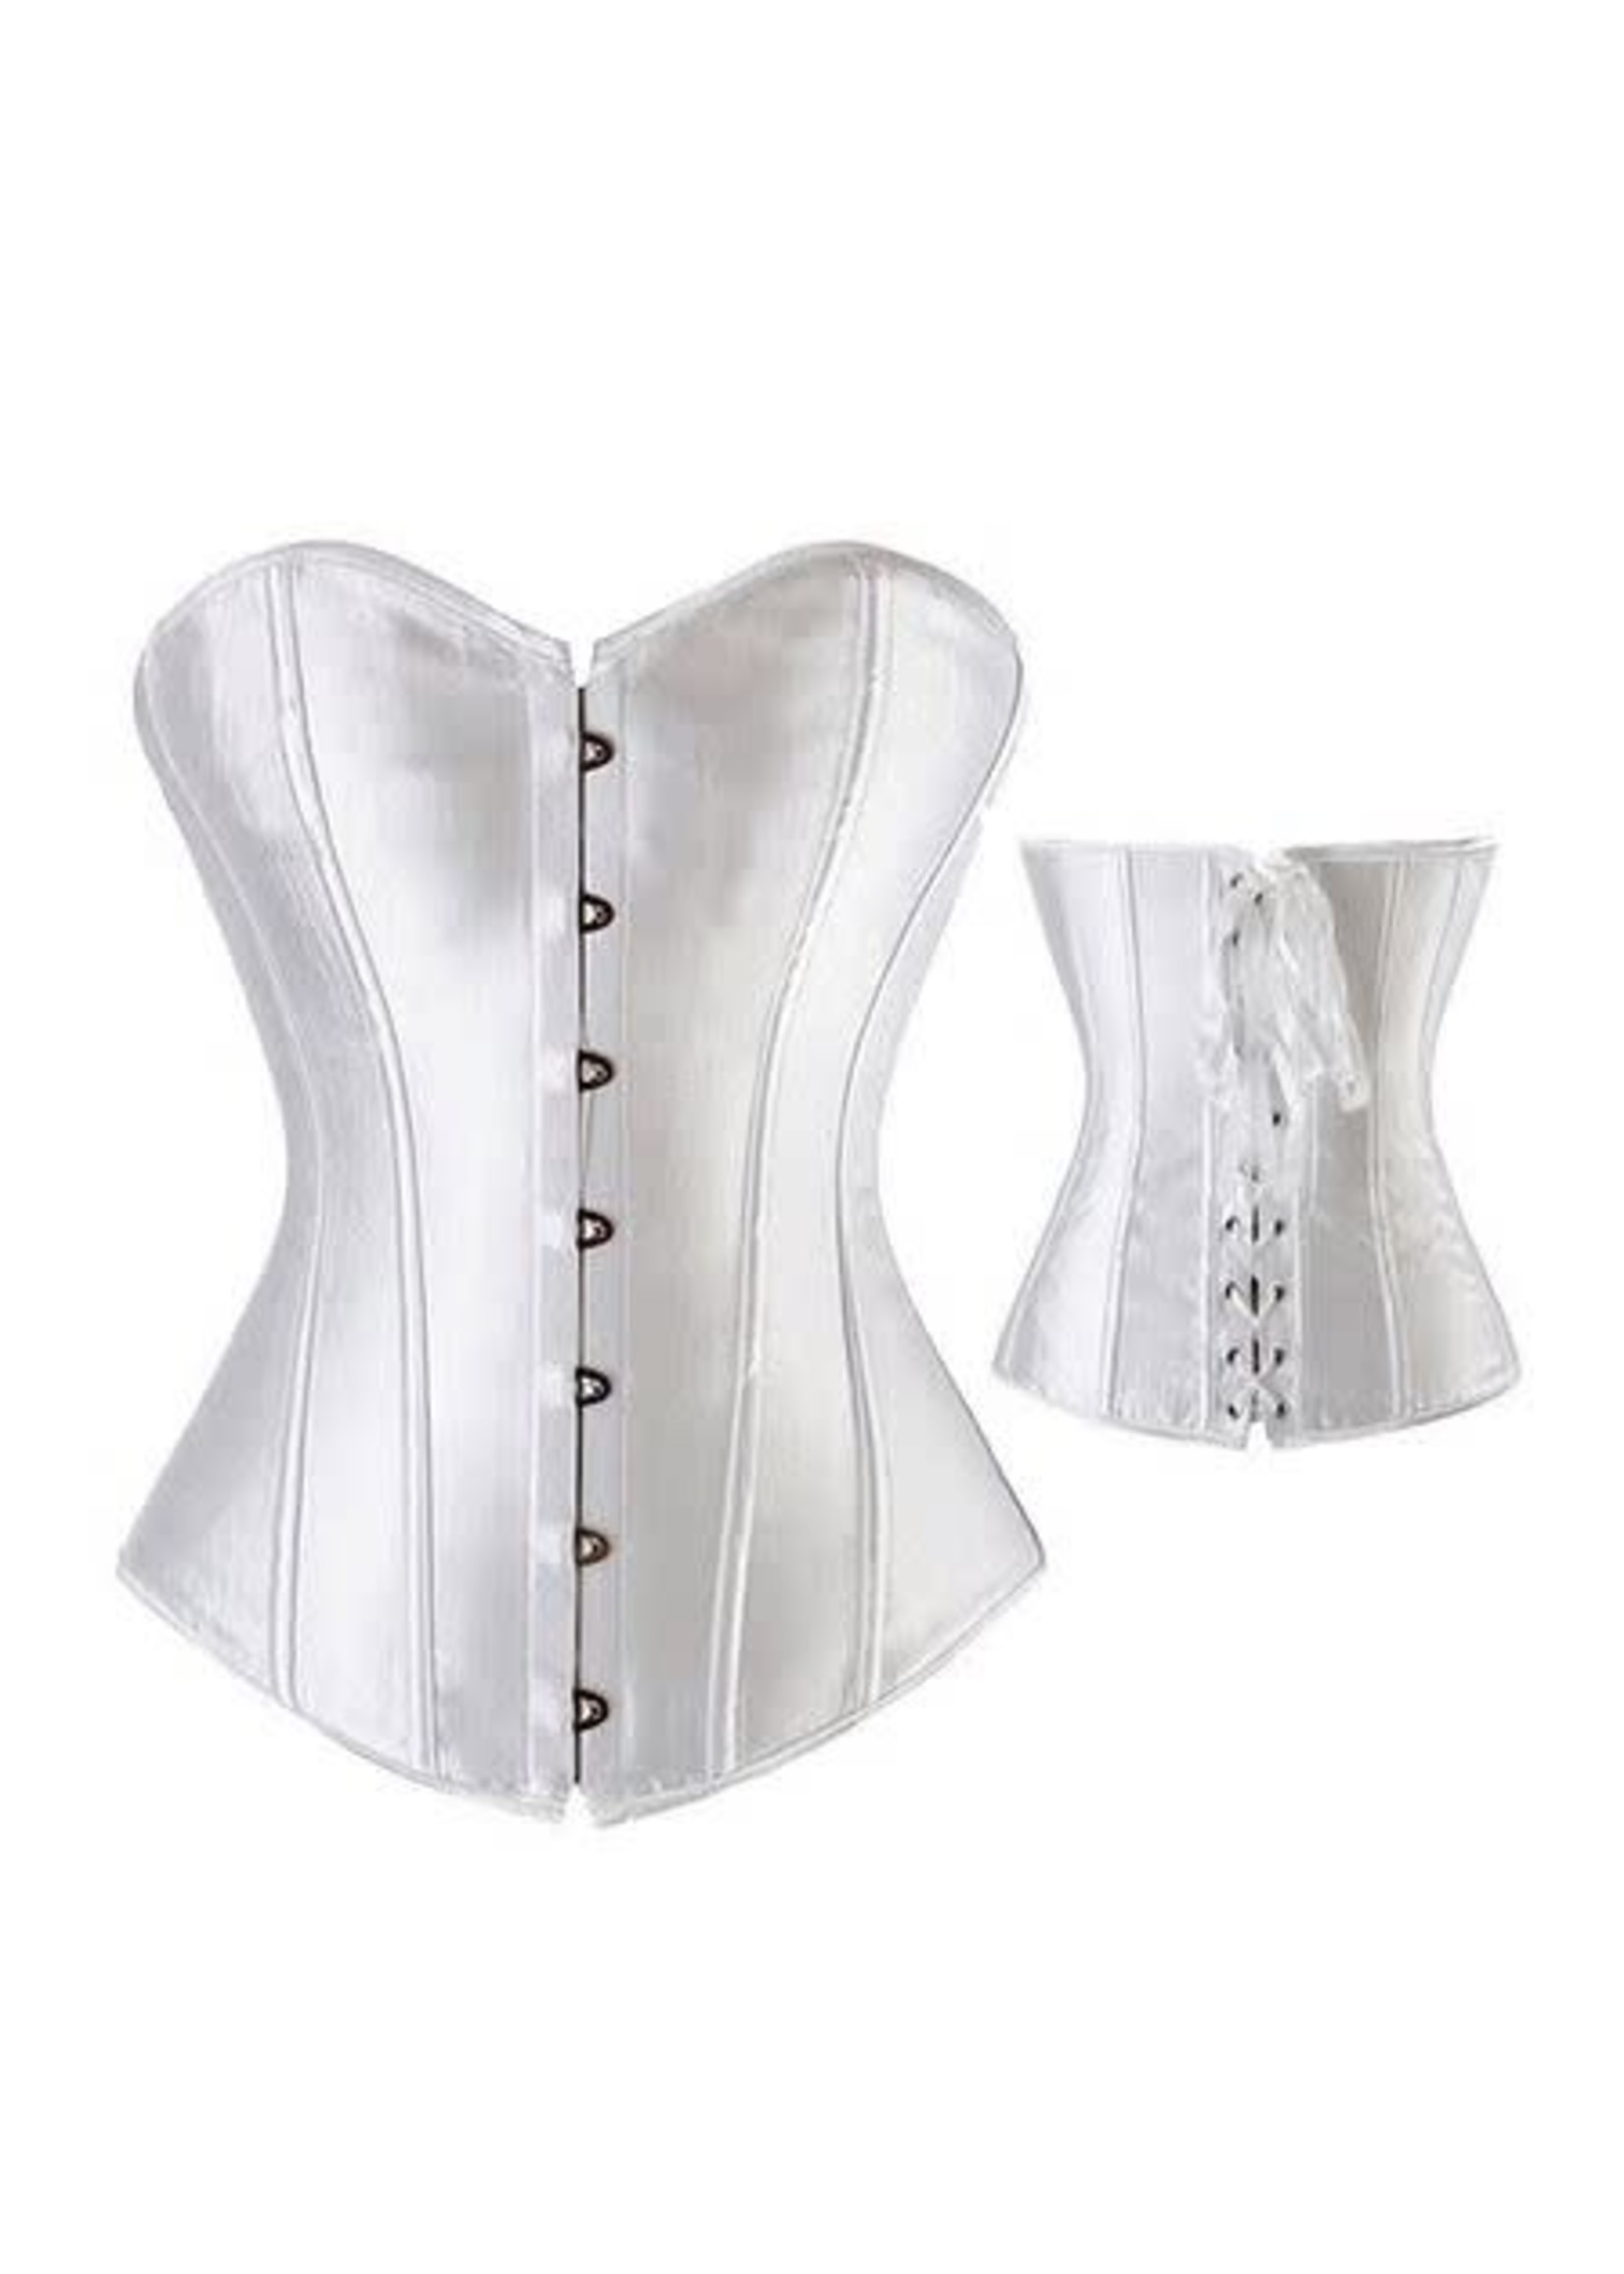 https://cdn.shoplightspeed.com/shops/624169/files/32485521/1652x2313x2/miss-moly-corset.jpg